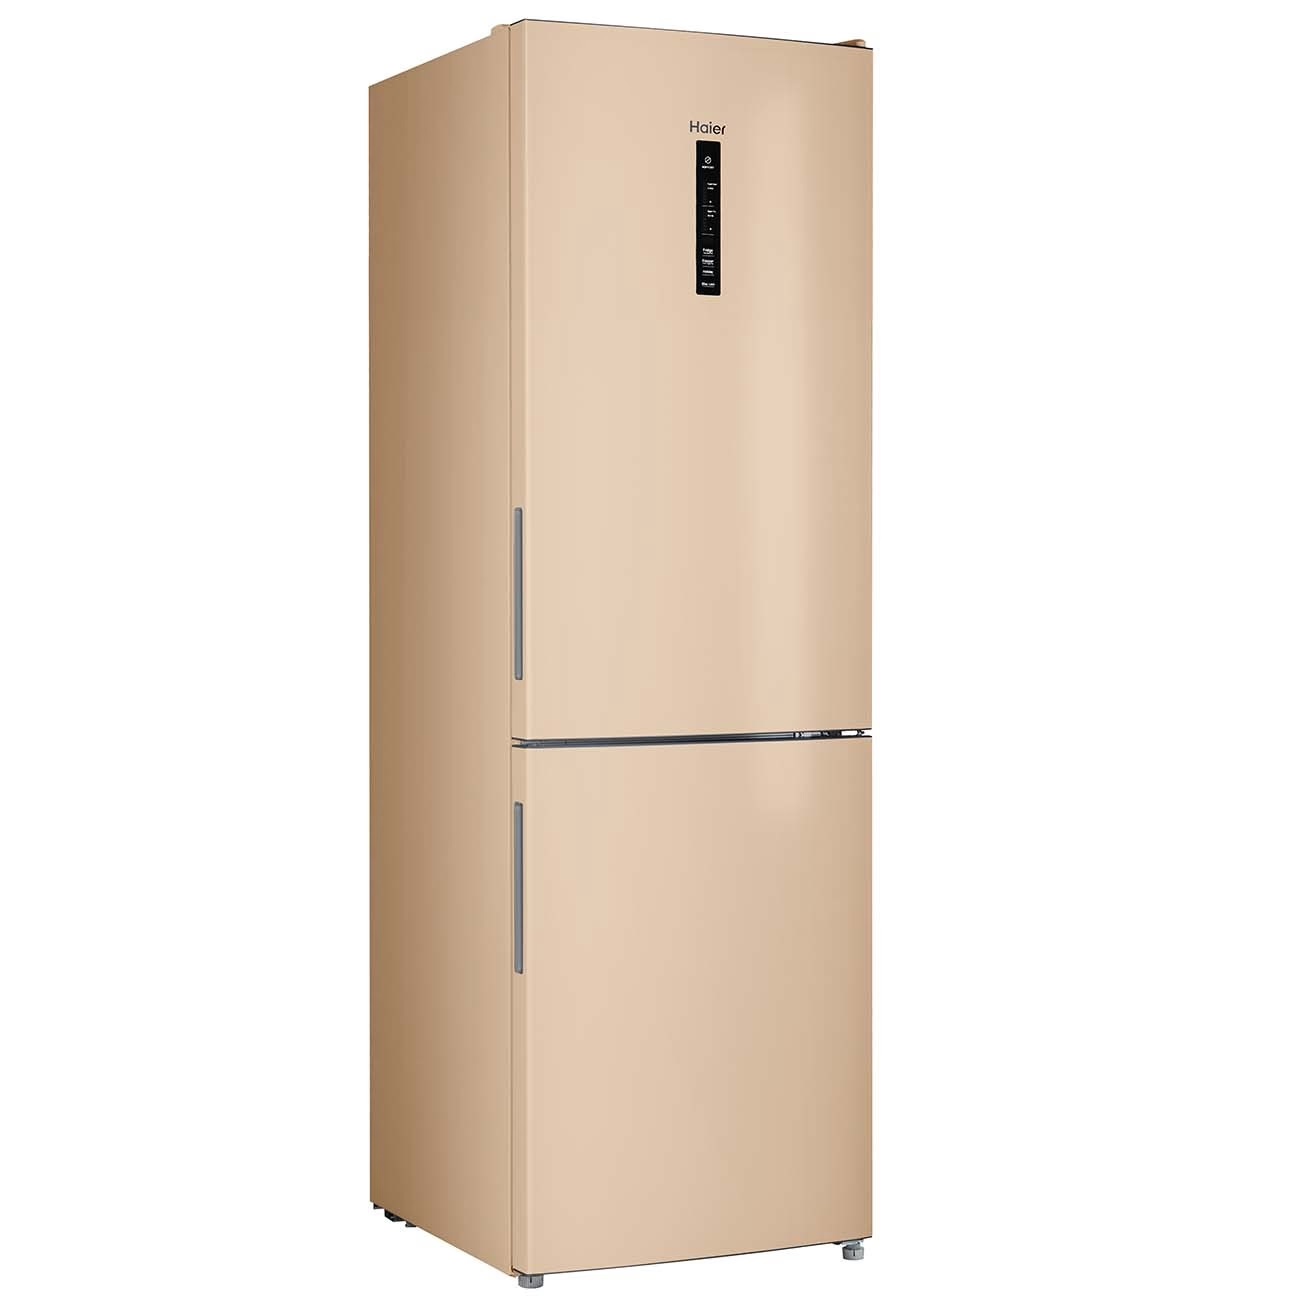 Холодильник Haier CEF535AGG золотистый холодильник haier c4f640ccgu1 золотистый